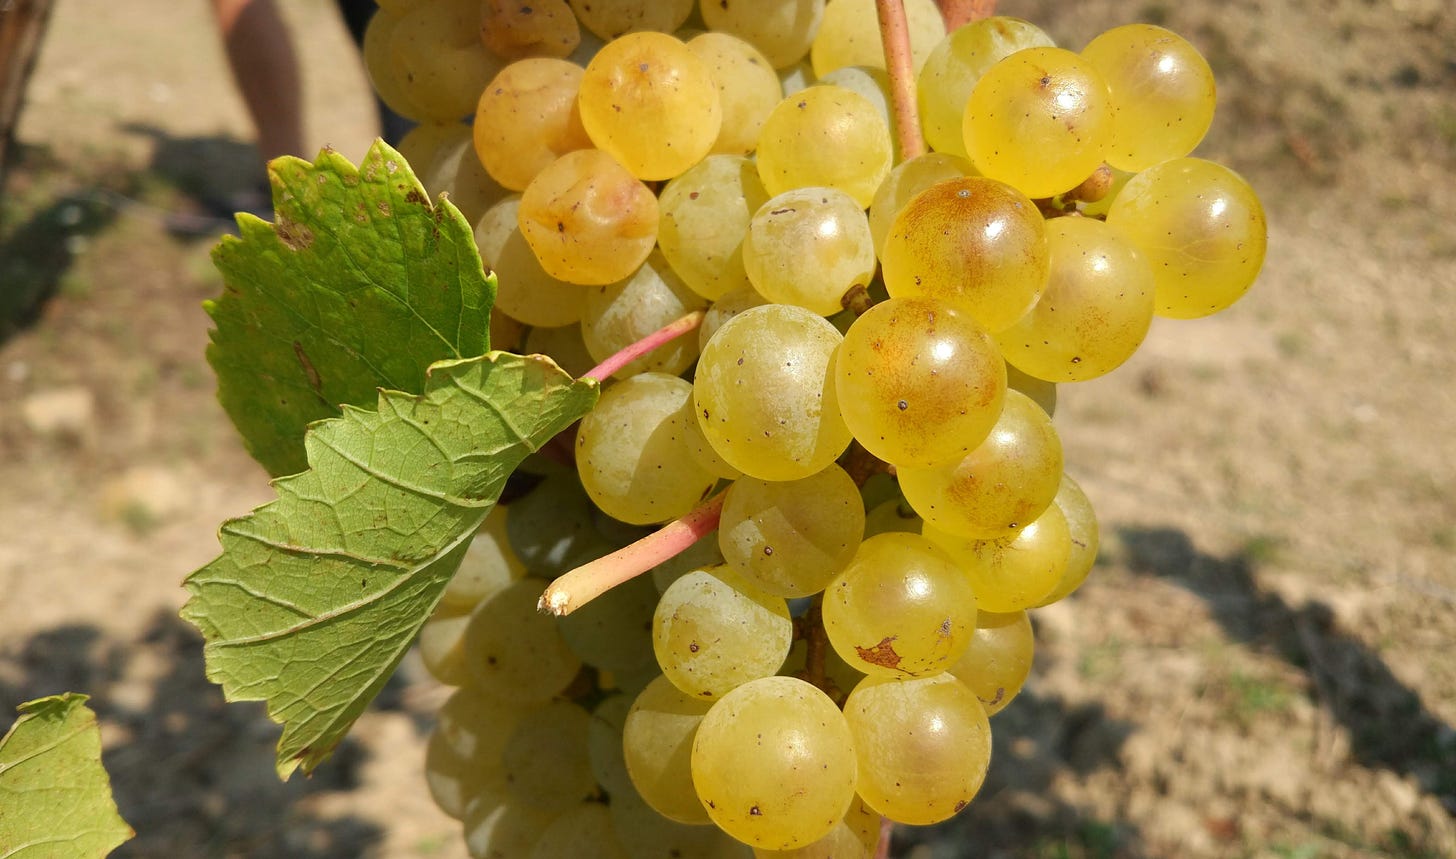 Ripe Rebula grapes at Mlecnik, Vipava Valley